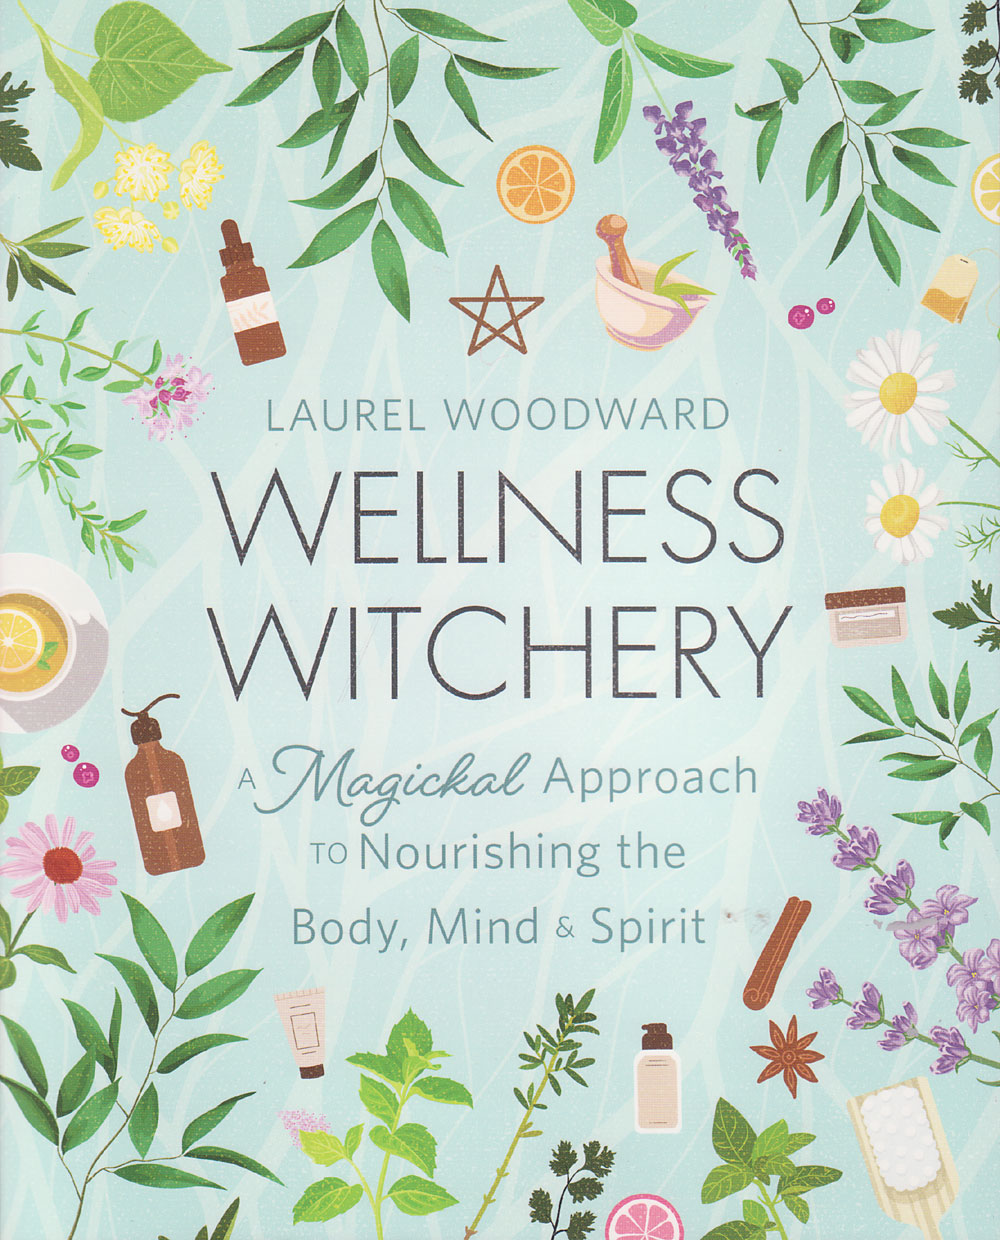 Wellness Witchery